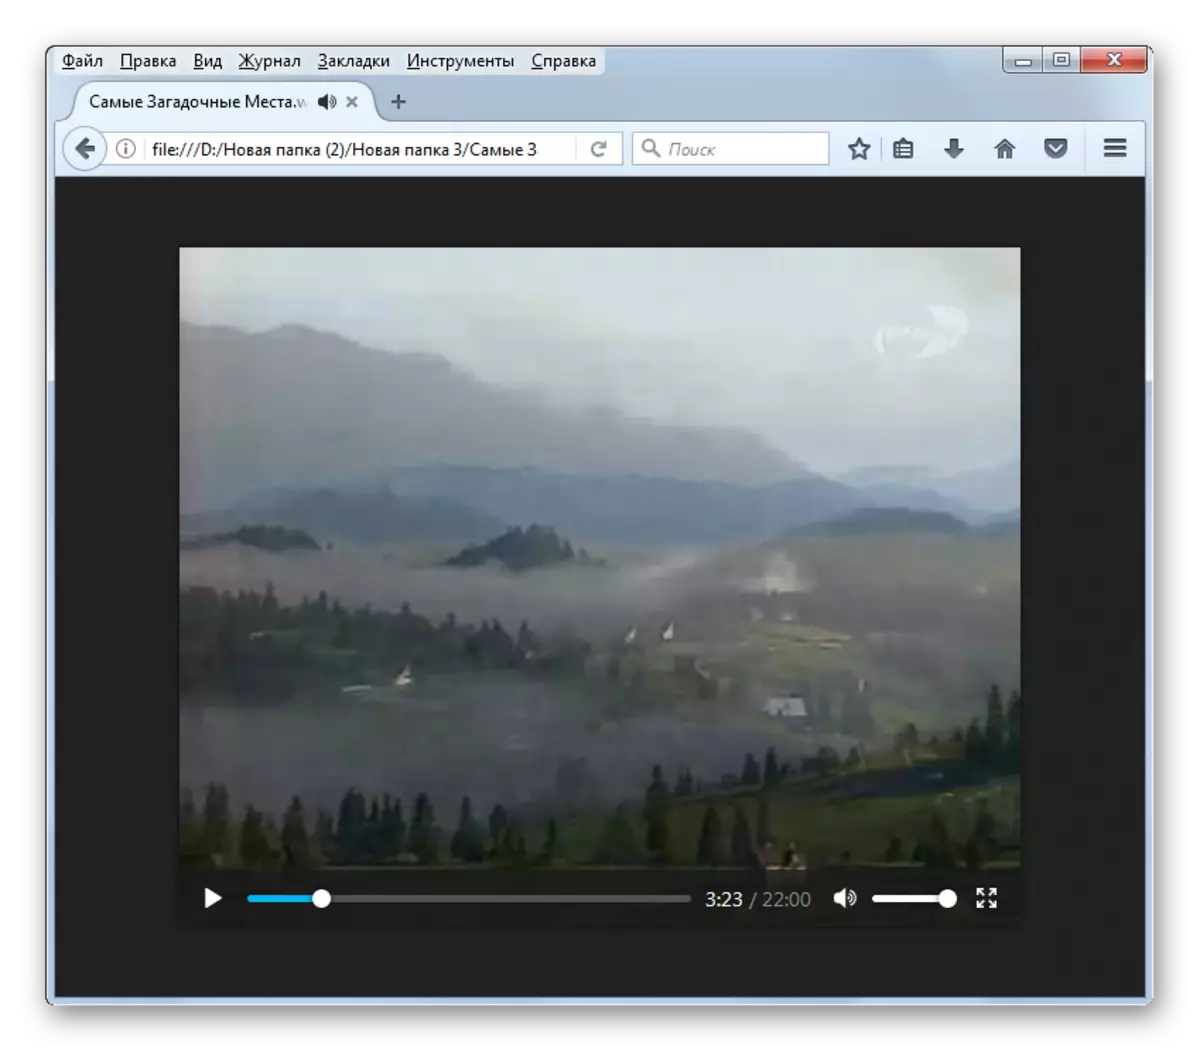 Reprodução de vídeo no formato WebM no Mozilla Firefox Browser